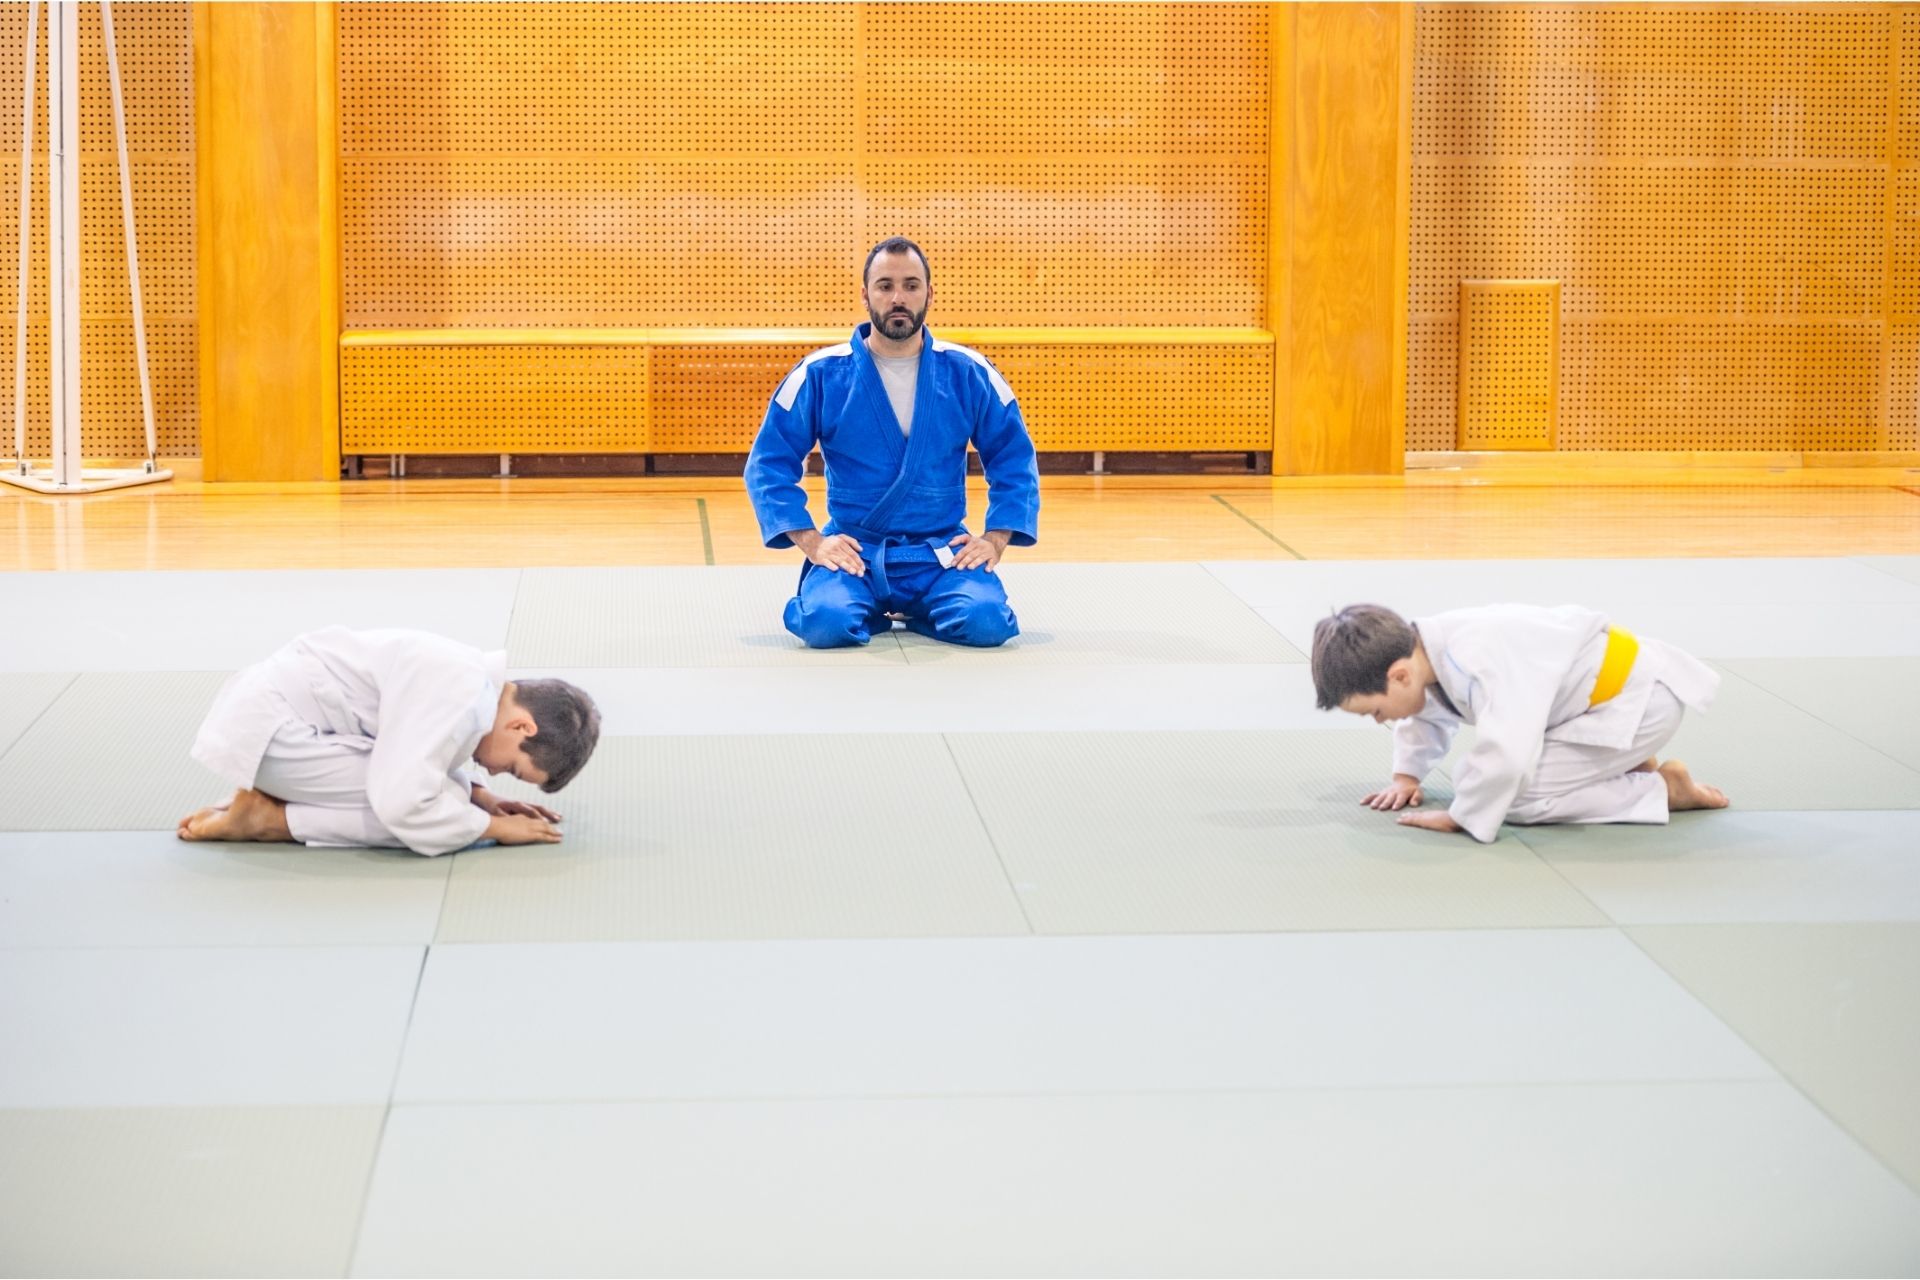 Quelques règles simples du judo